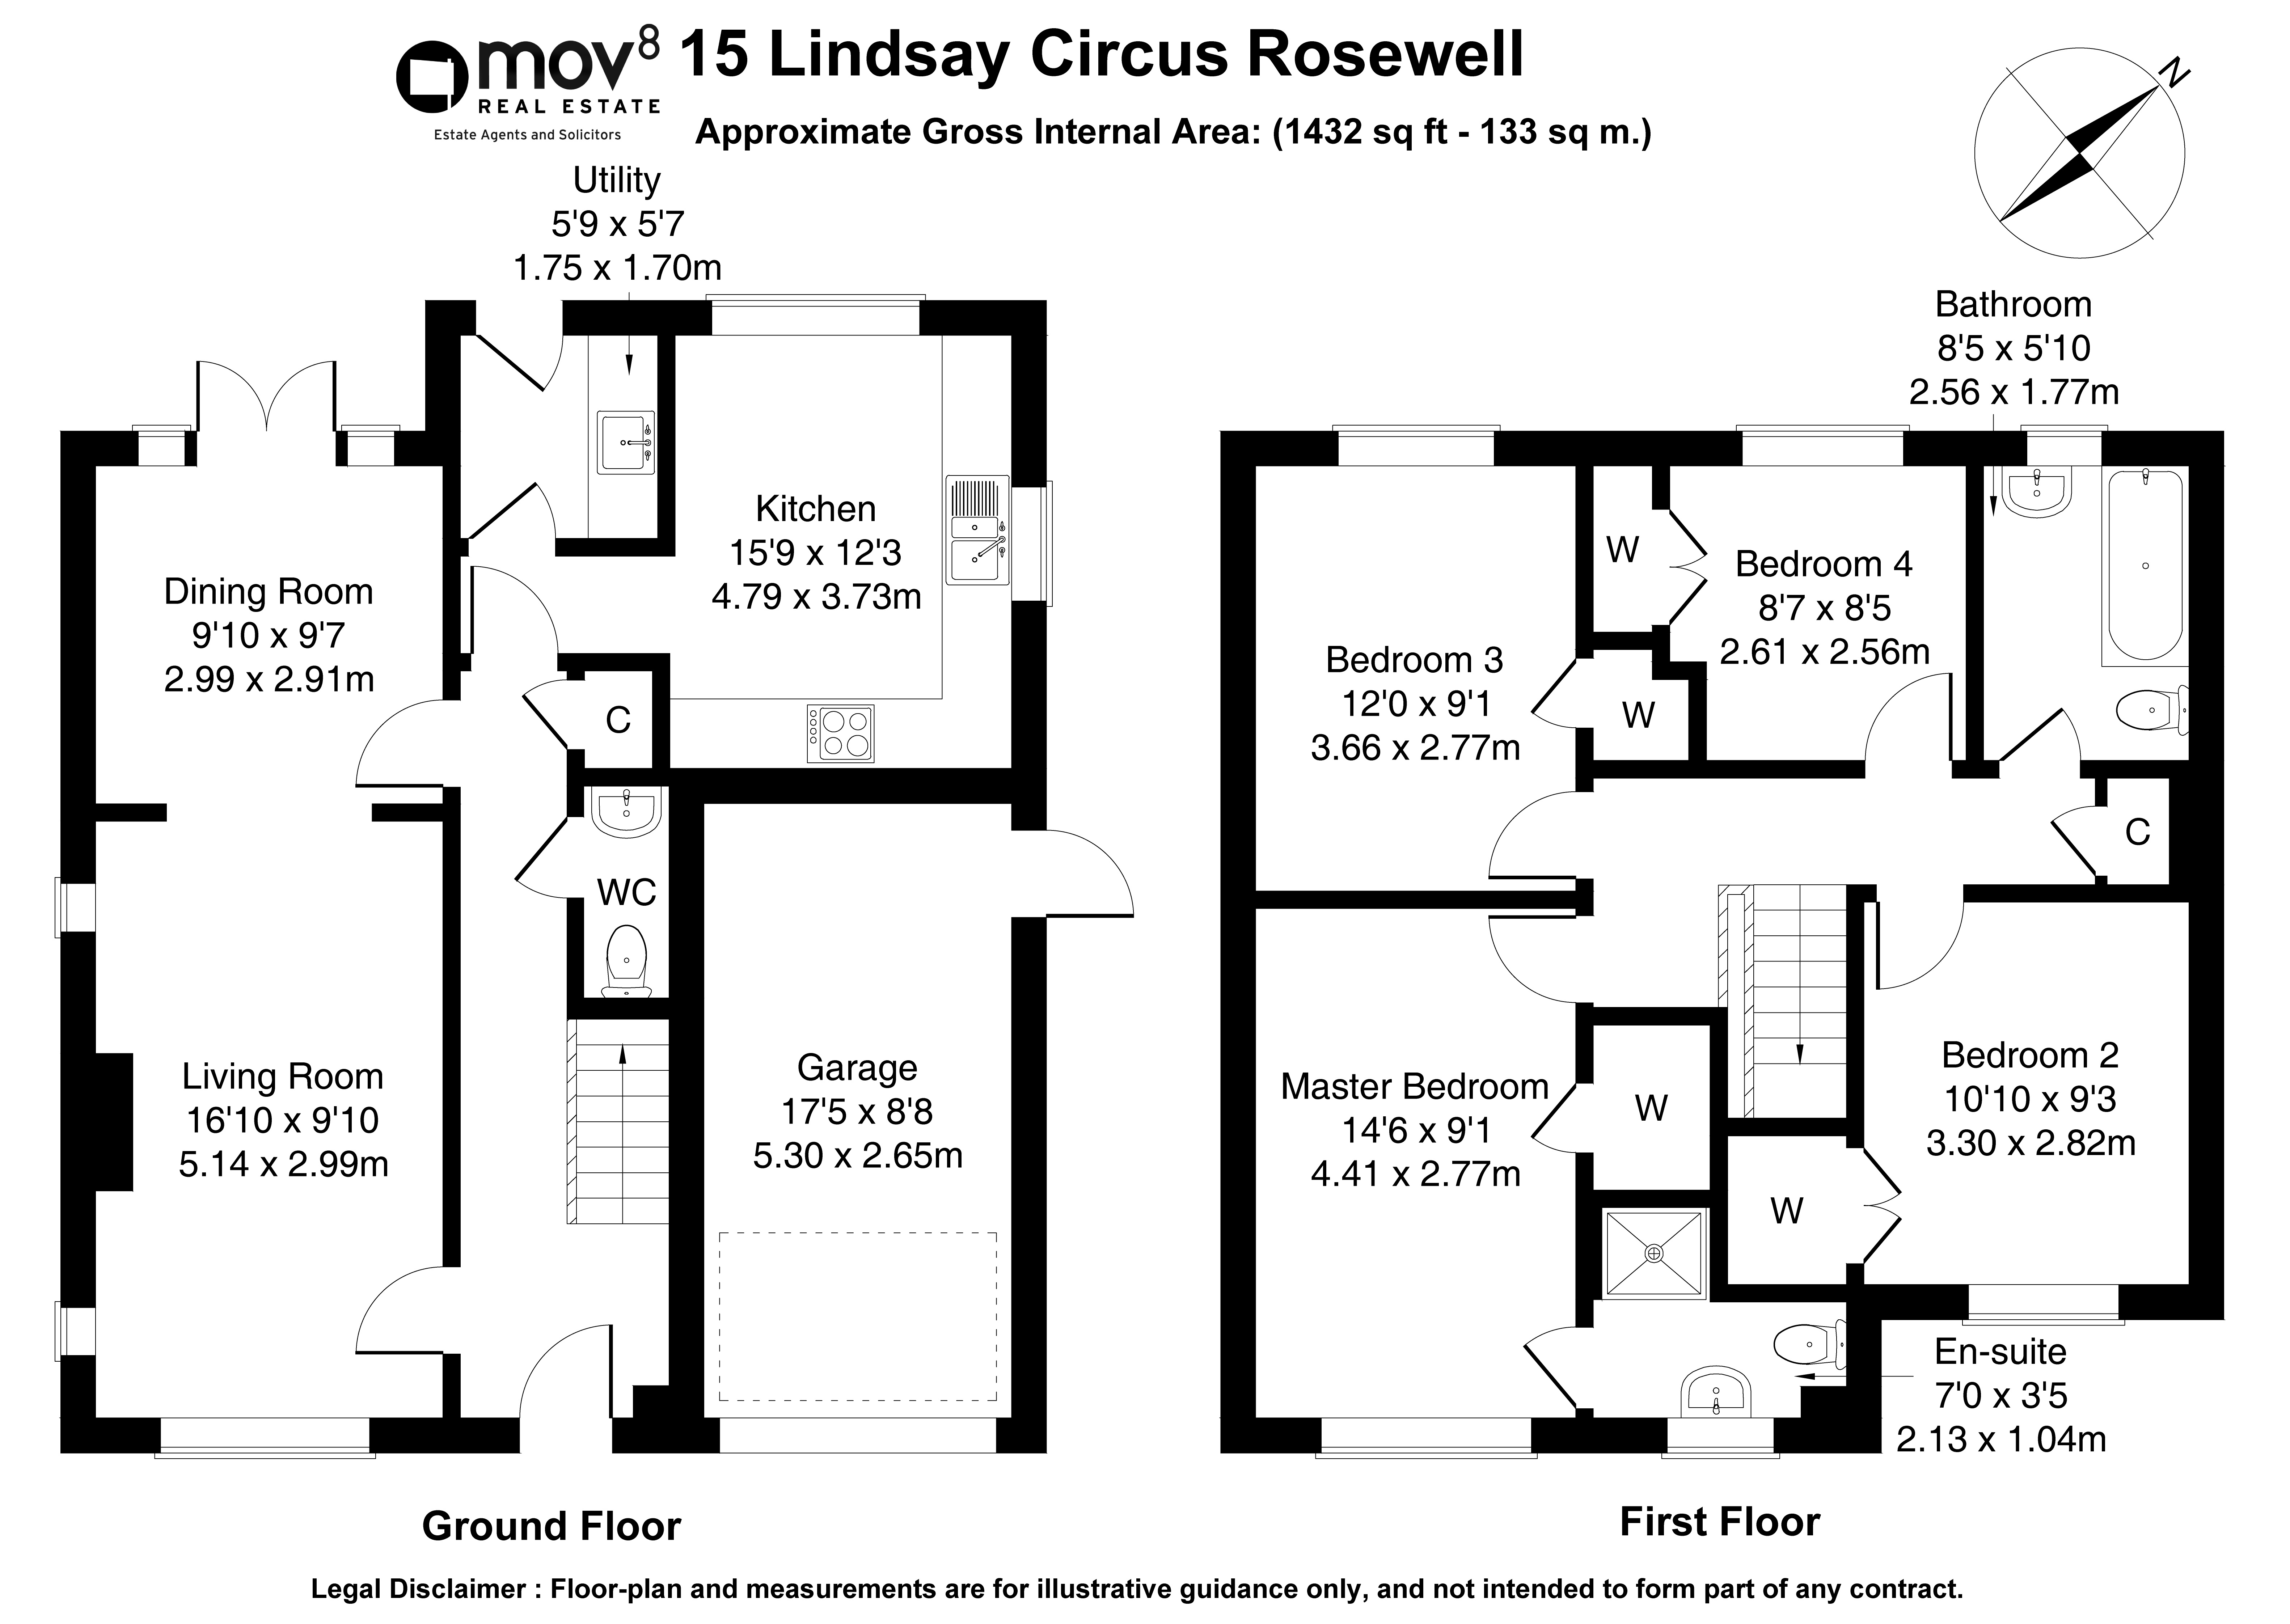 Floorplan 1 of 15 Lindsay Circus, Rosewell, Midlothian, EH24 9EN